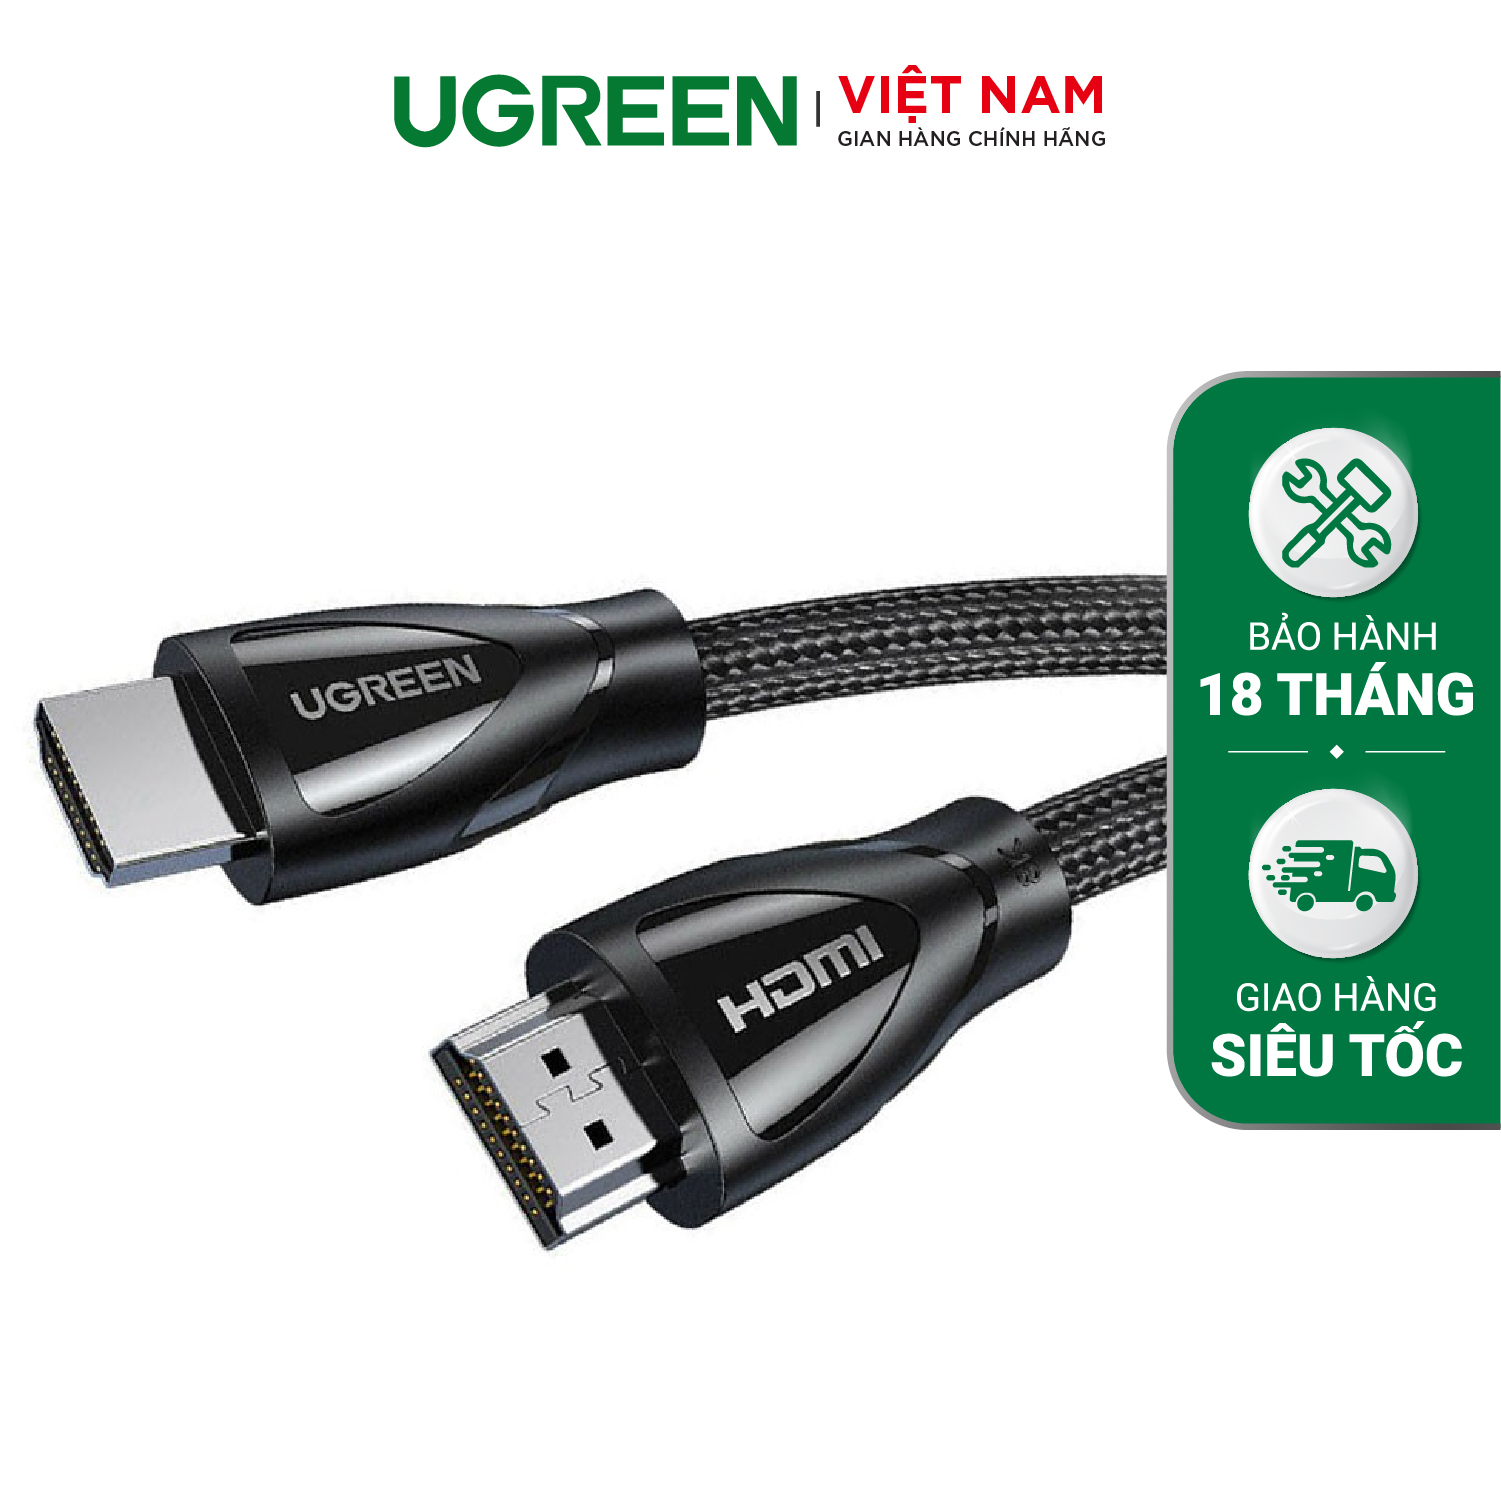 Cáp HDMI 2.1 UGREEN HD140 Hỗ trợ phân giải 8K/60Hz – Truyền tải tín hiệu không suy hao, Vỏ bện bông chống rối, độ bền cso – Hàng phân phối chính hãng – Bảo hành 18 tháng 1 đổi 1